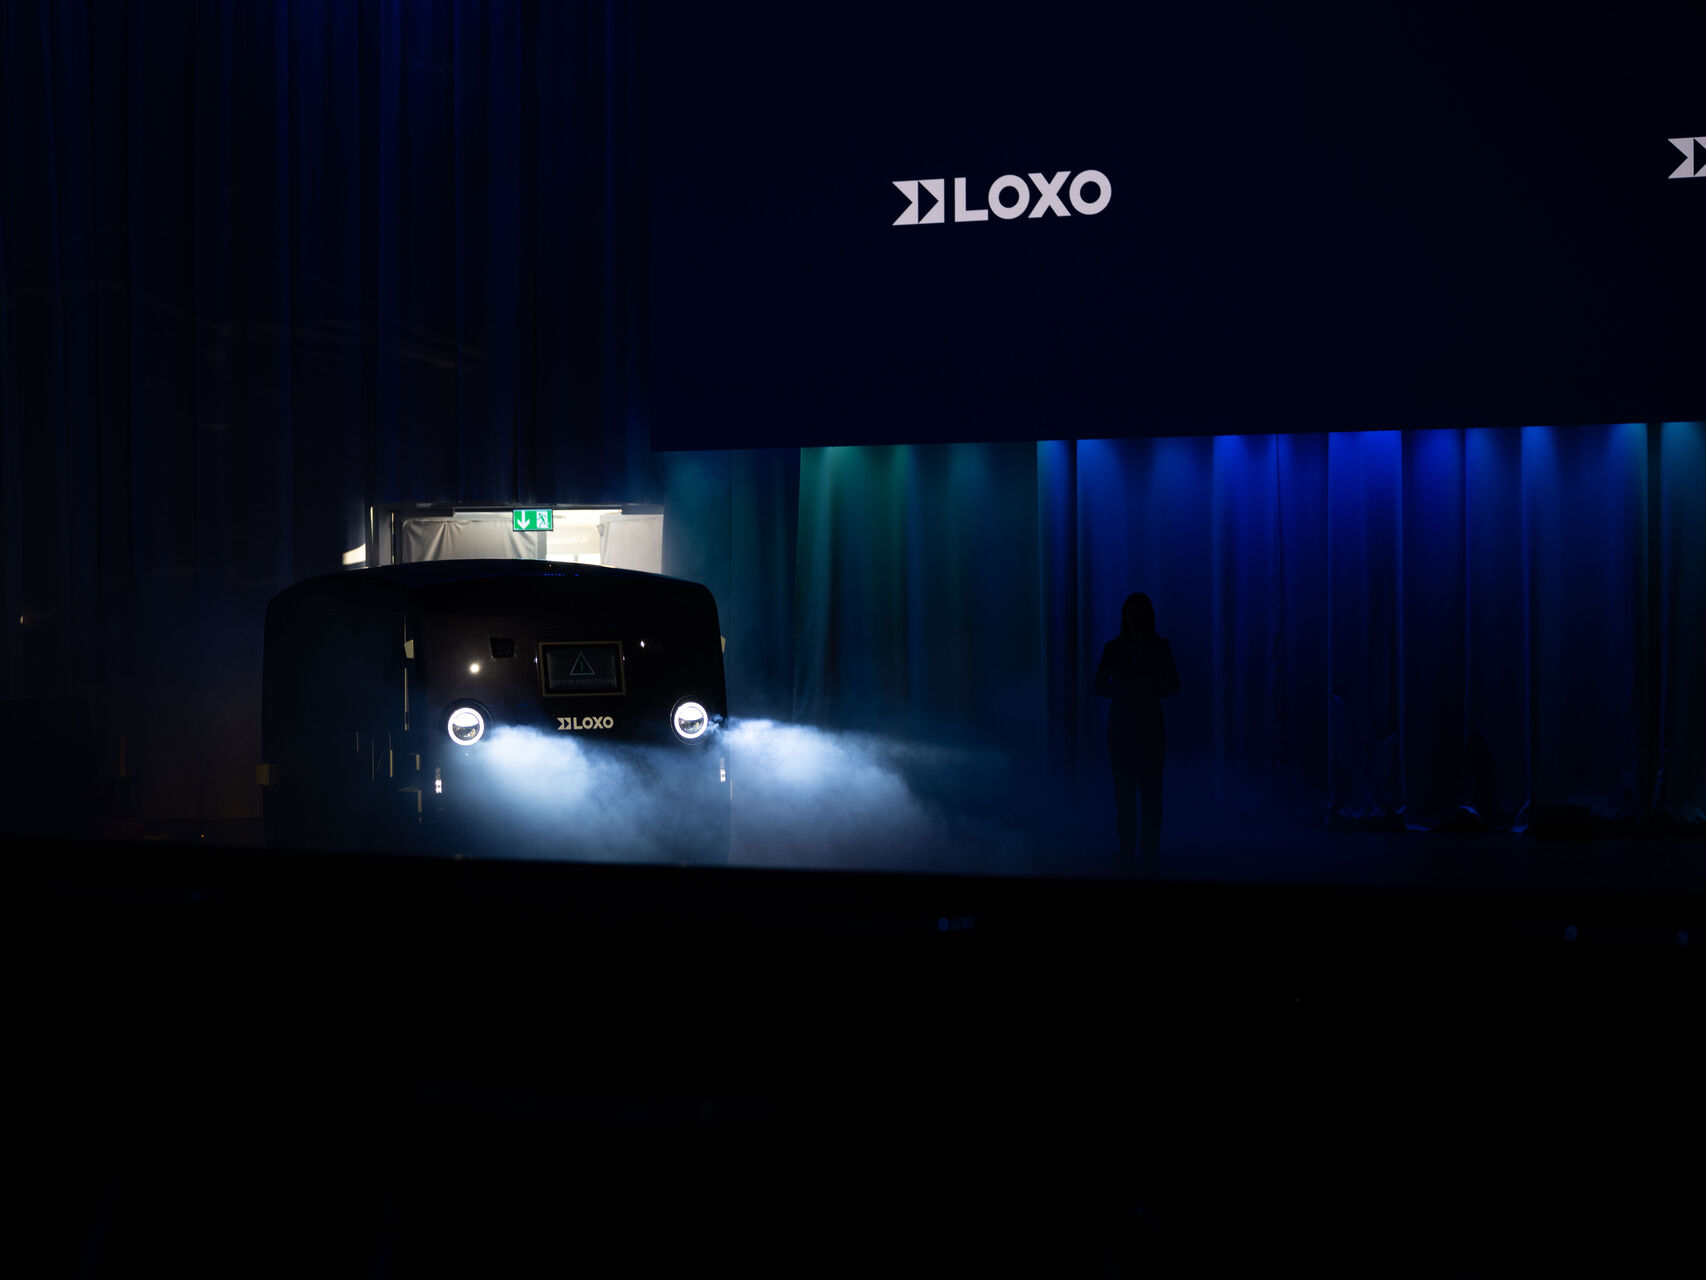 LOXO: Alpha to samojezdny van wyprodukowany w całości w Szwajcarii i zaprezentowany 6 grudnia 2022 r. w Kursaal w Bernie podczas konferencji prasowej start-upu LOXO